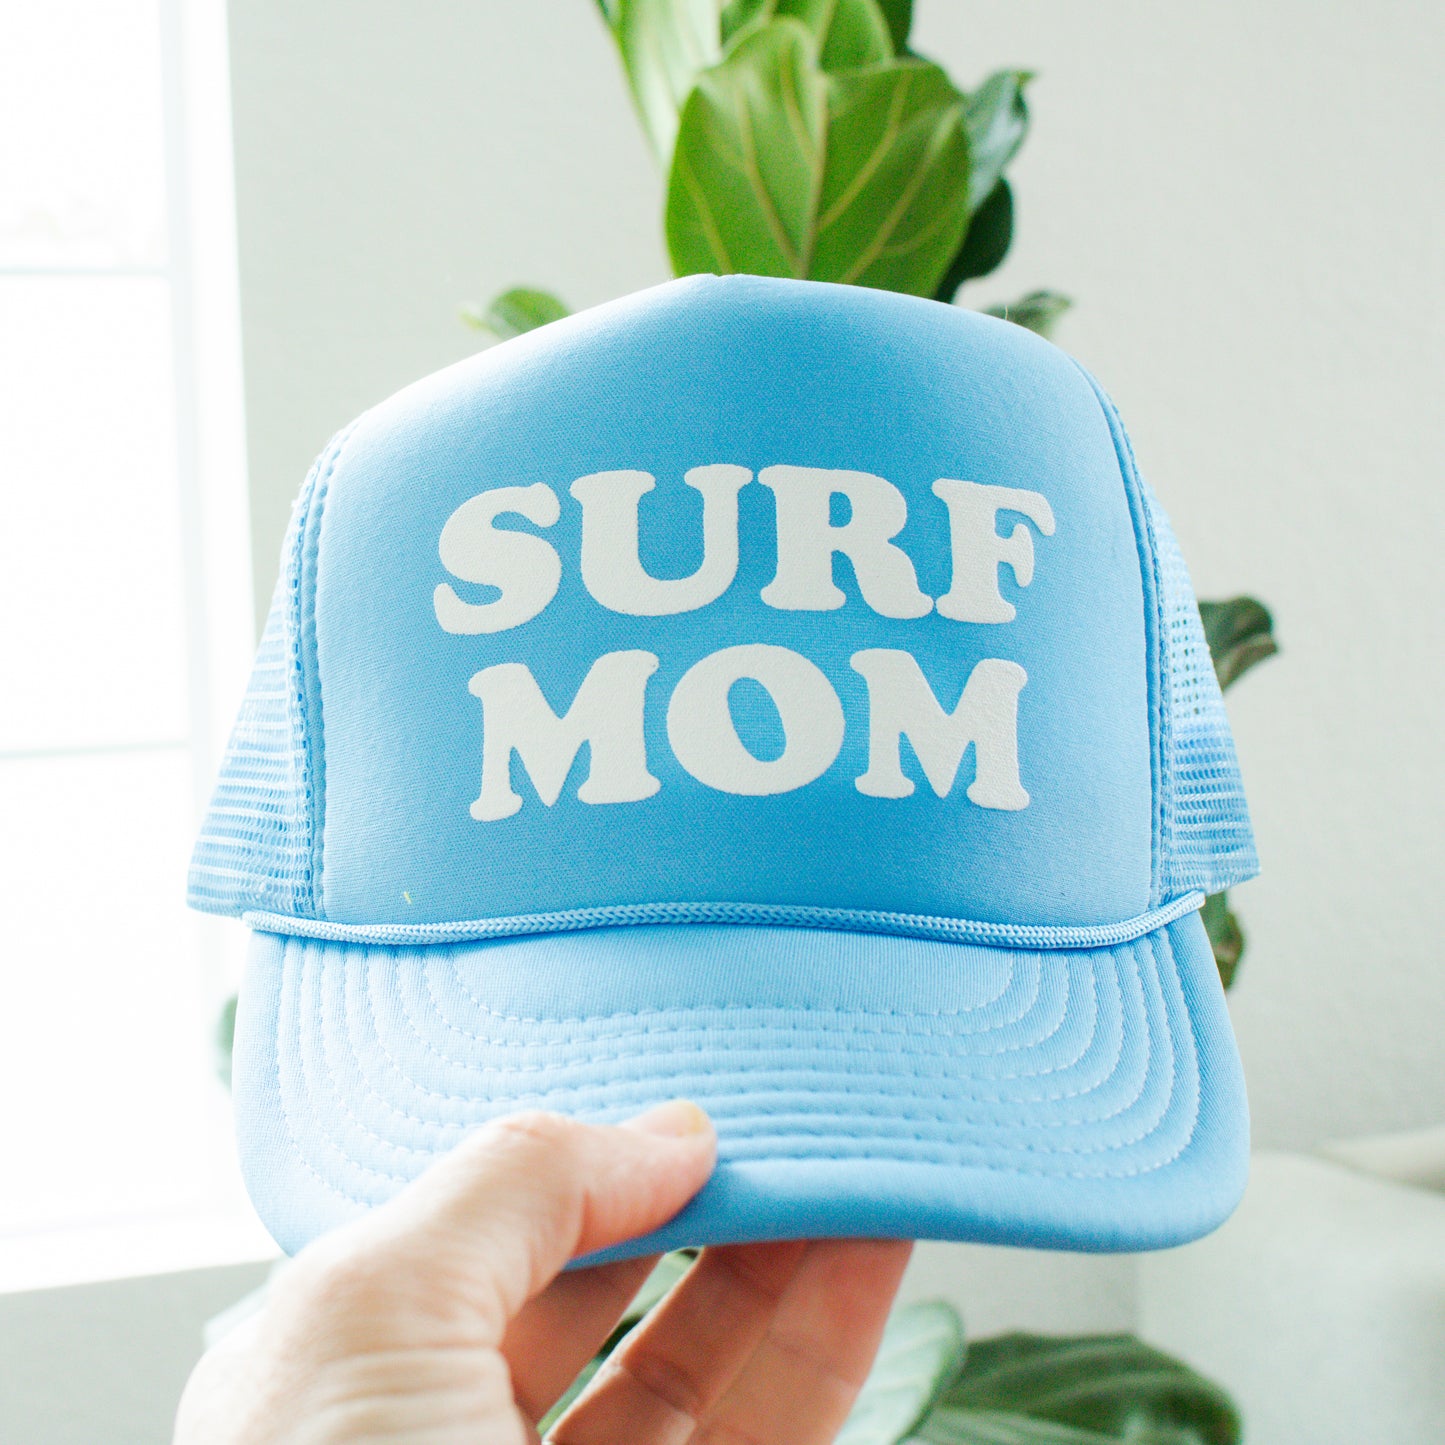 Surf Mom Trucker